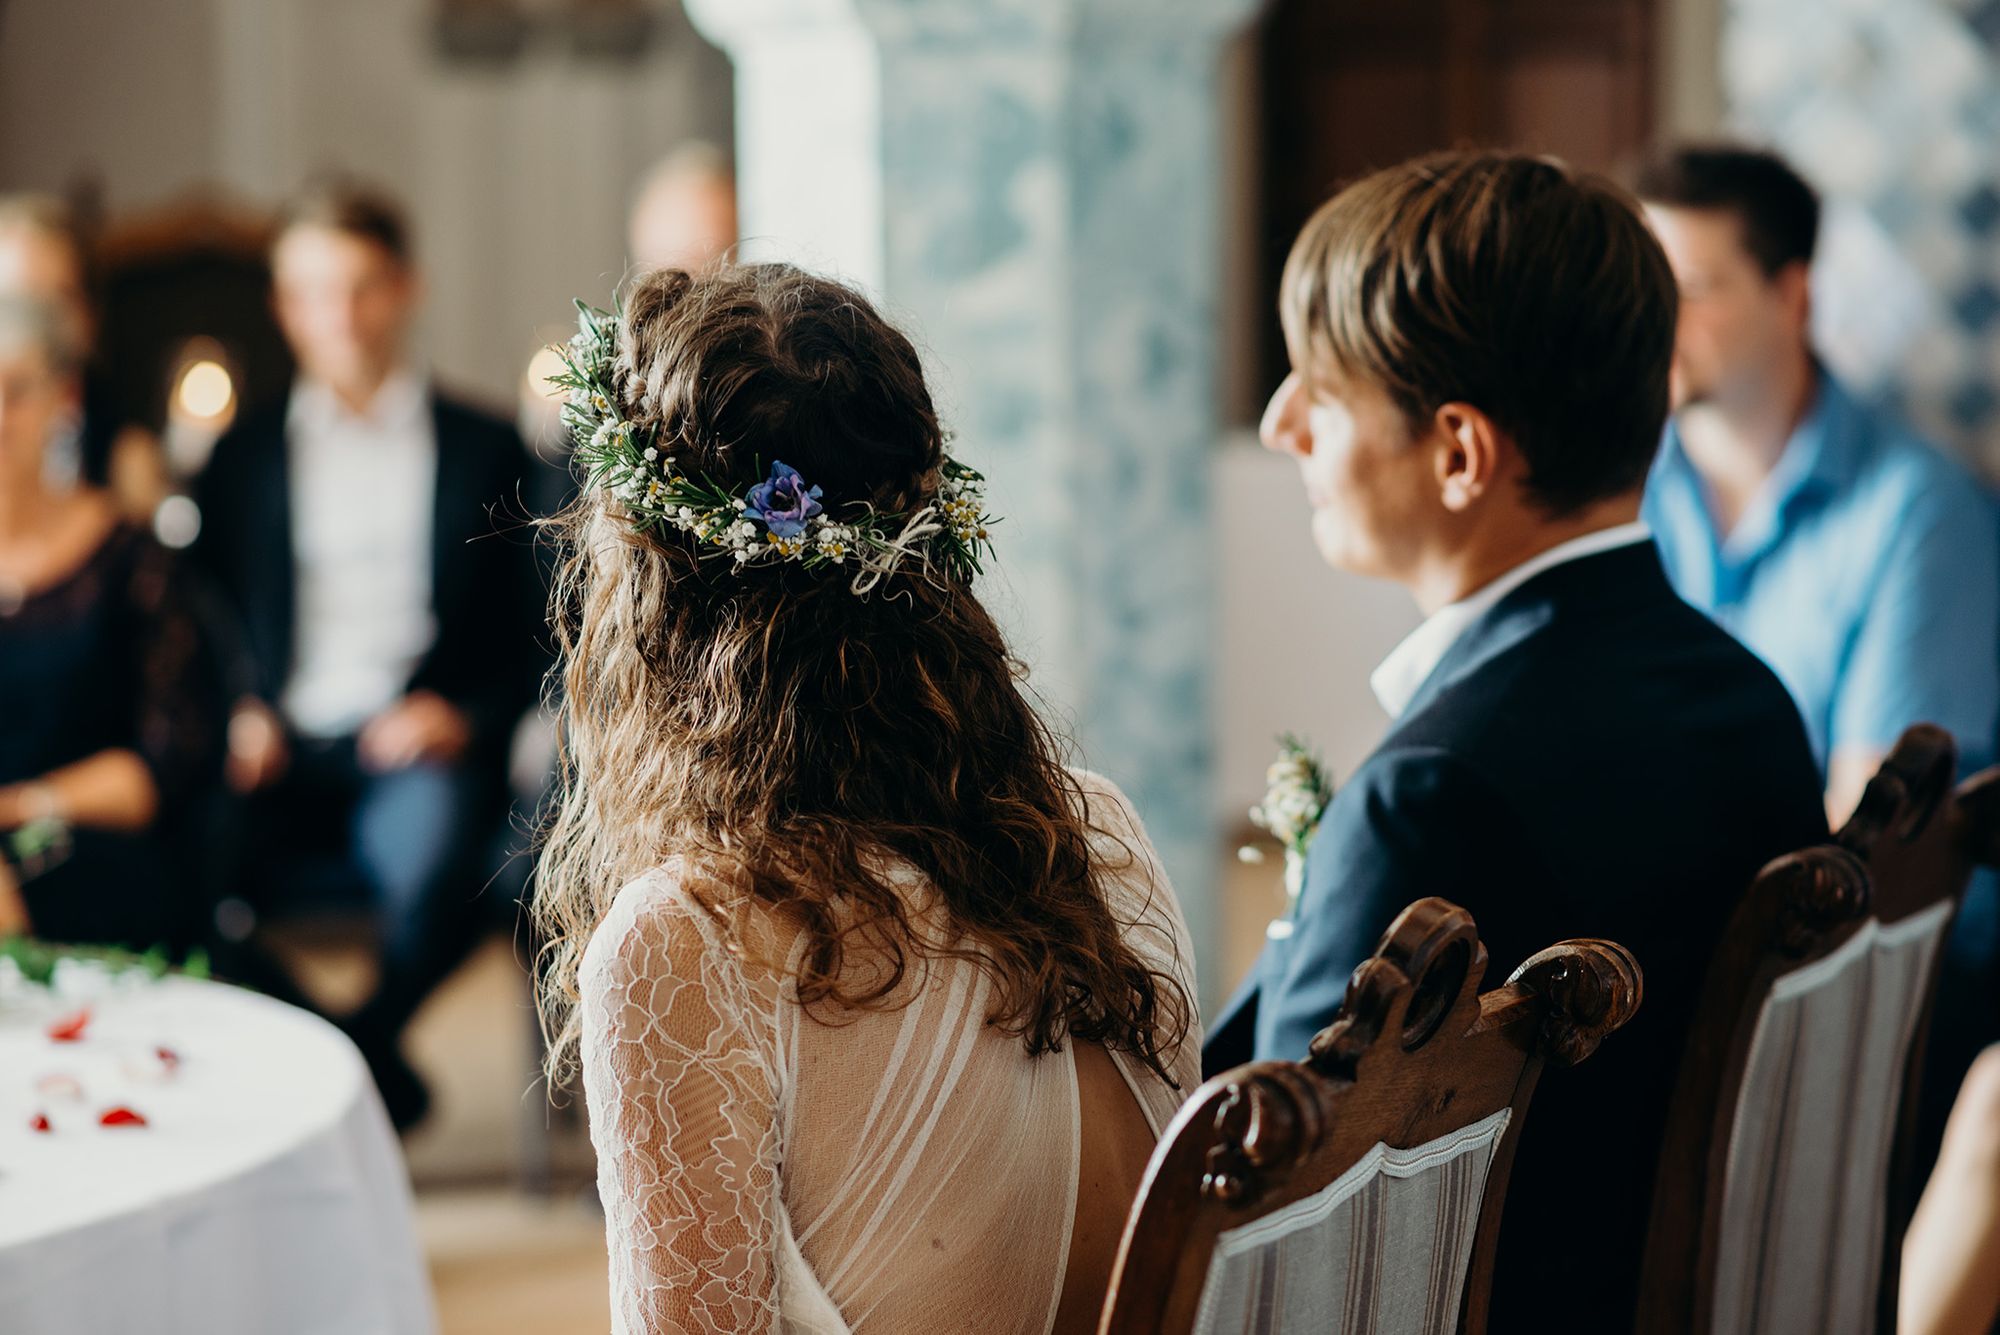 Eine Braut und ein Bräutigam schauen sich während ihrer Hochzeitszeremonie an.